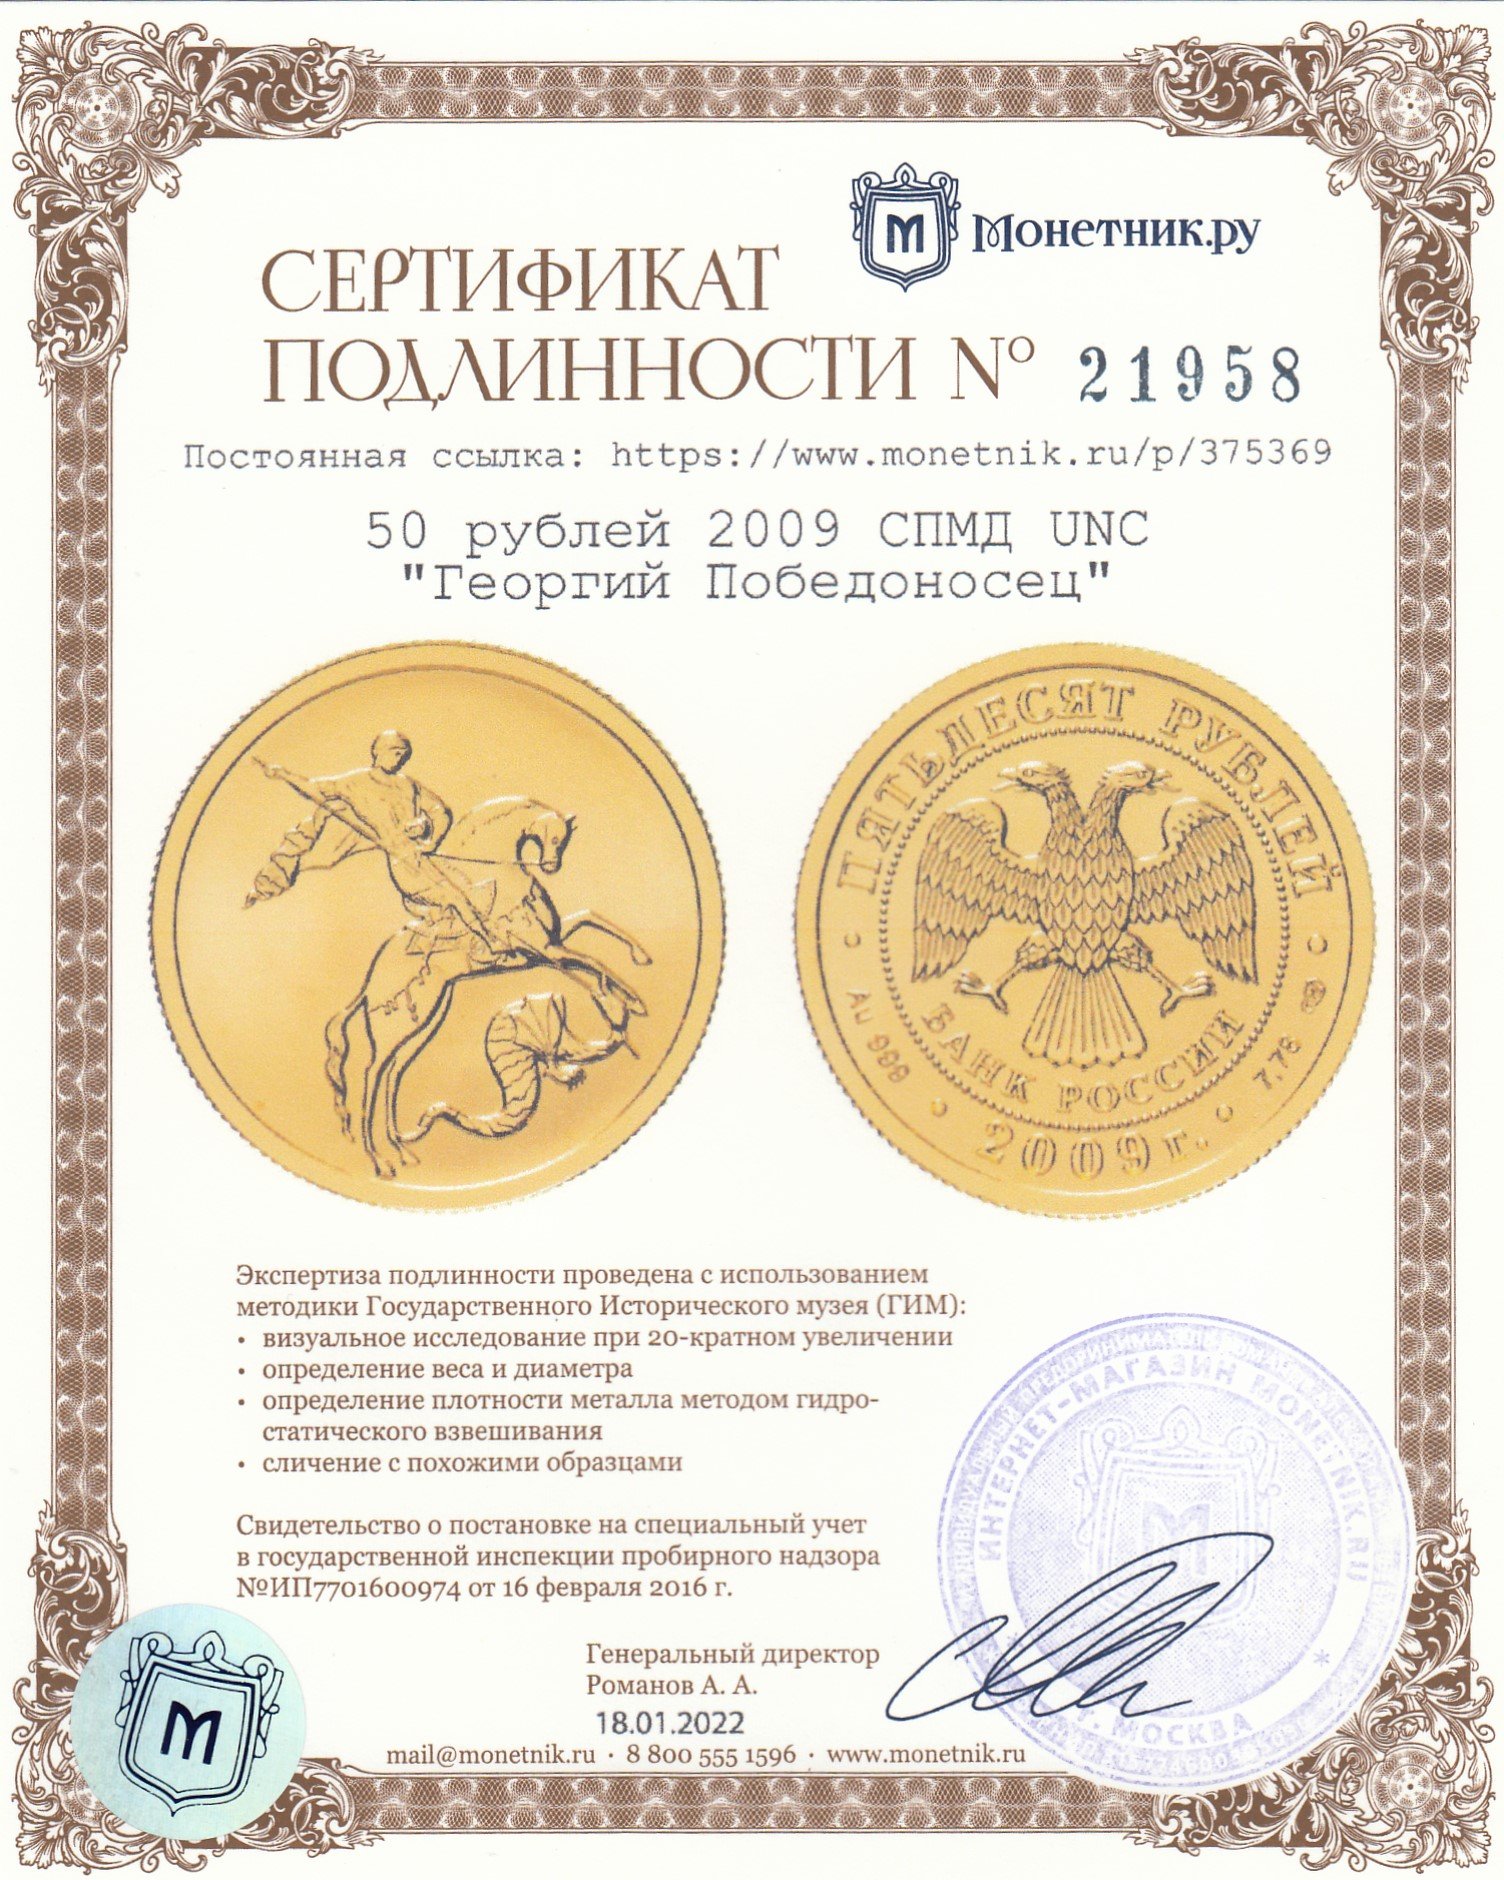 5 рублей на весах. Сертификат подлинности.